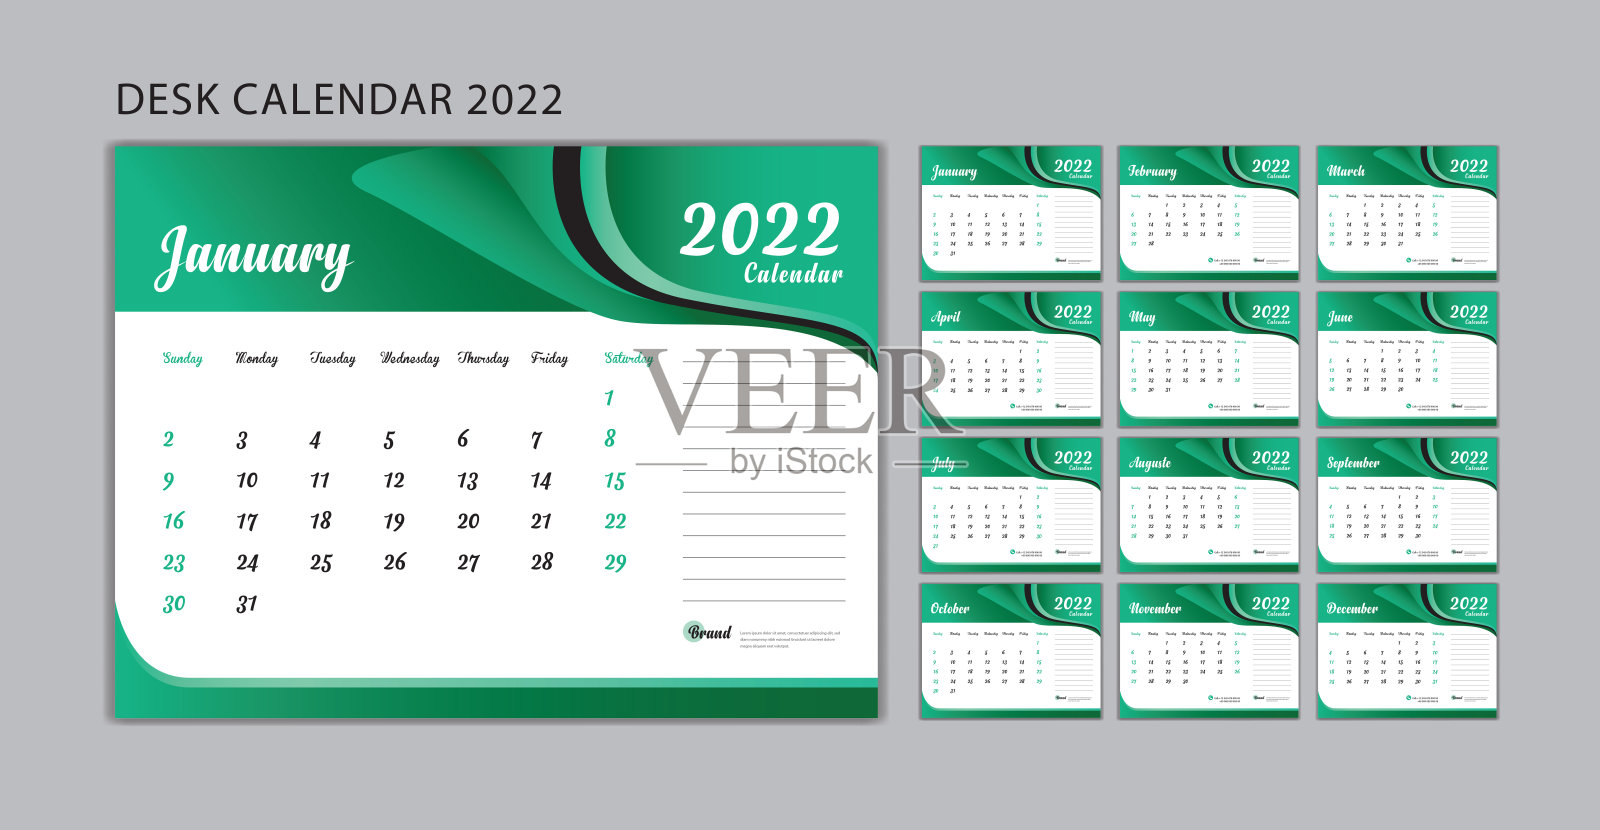 设置桌面日历2022模板矢量，设置12个月，周开始周日，规划师，墙壁日历2022模板，文具，印刷，广告，绿波背景，创意日历设计。设计模板素材